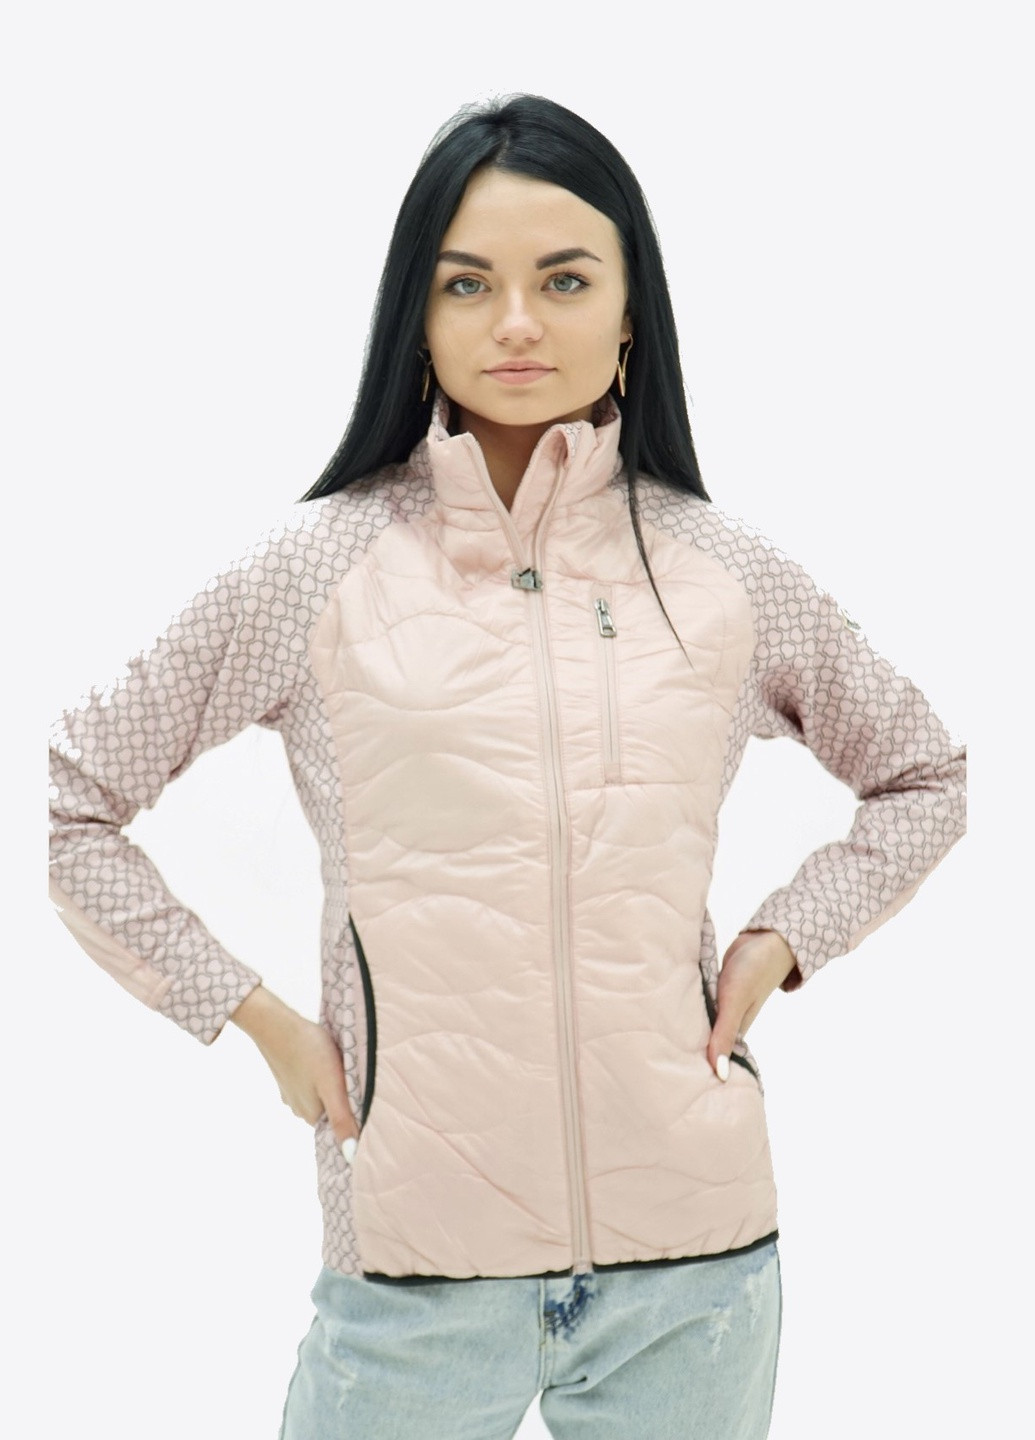 Пудровая демисезонная куртка женская Moncler